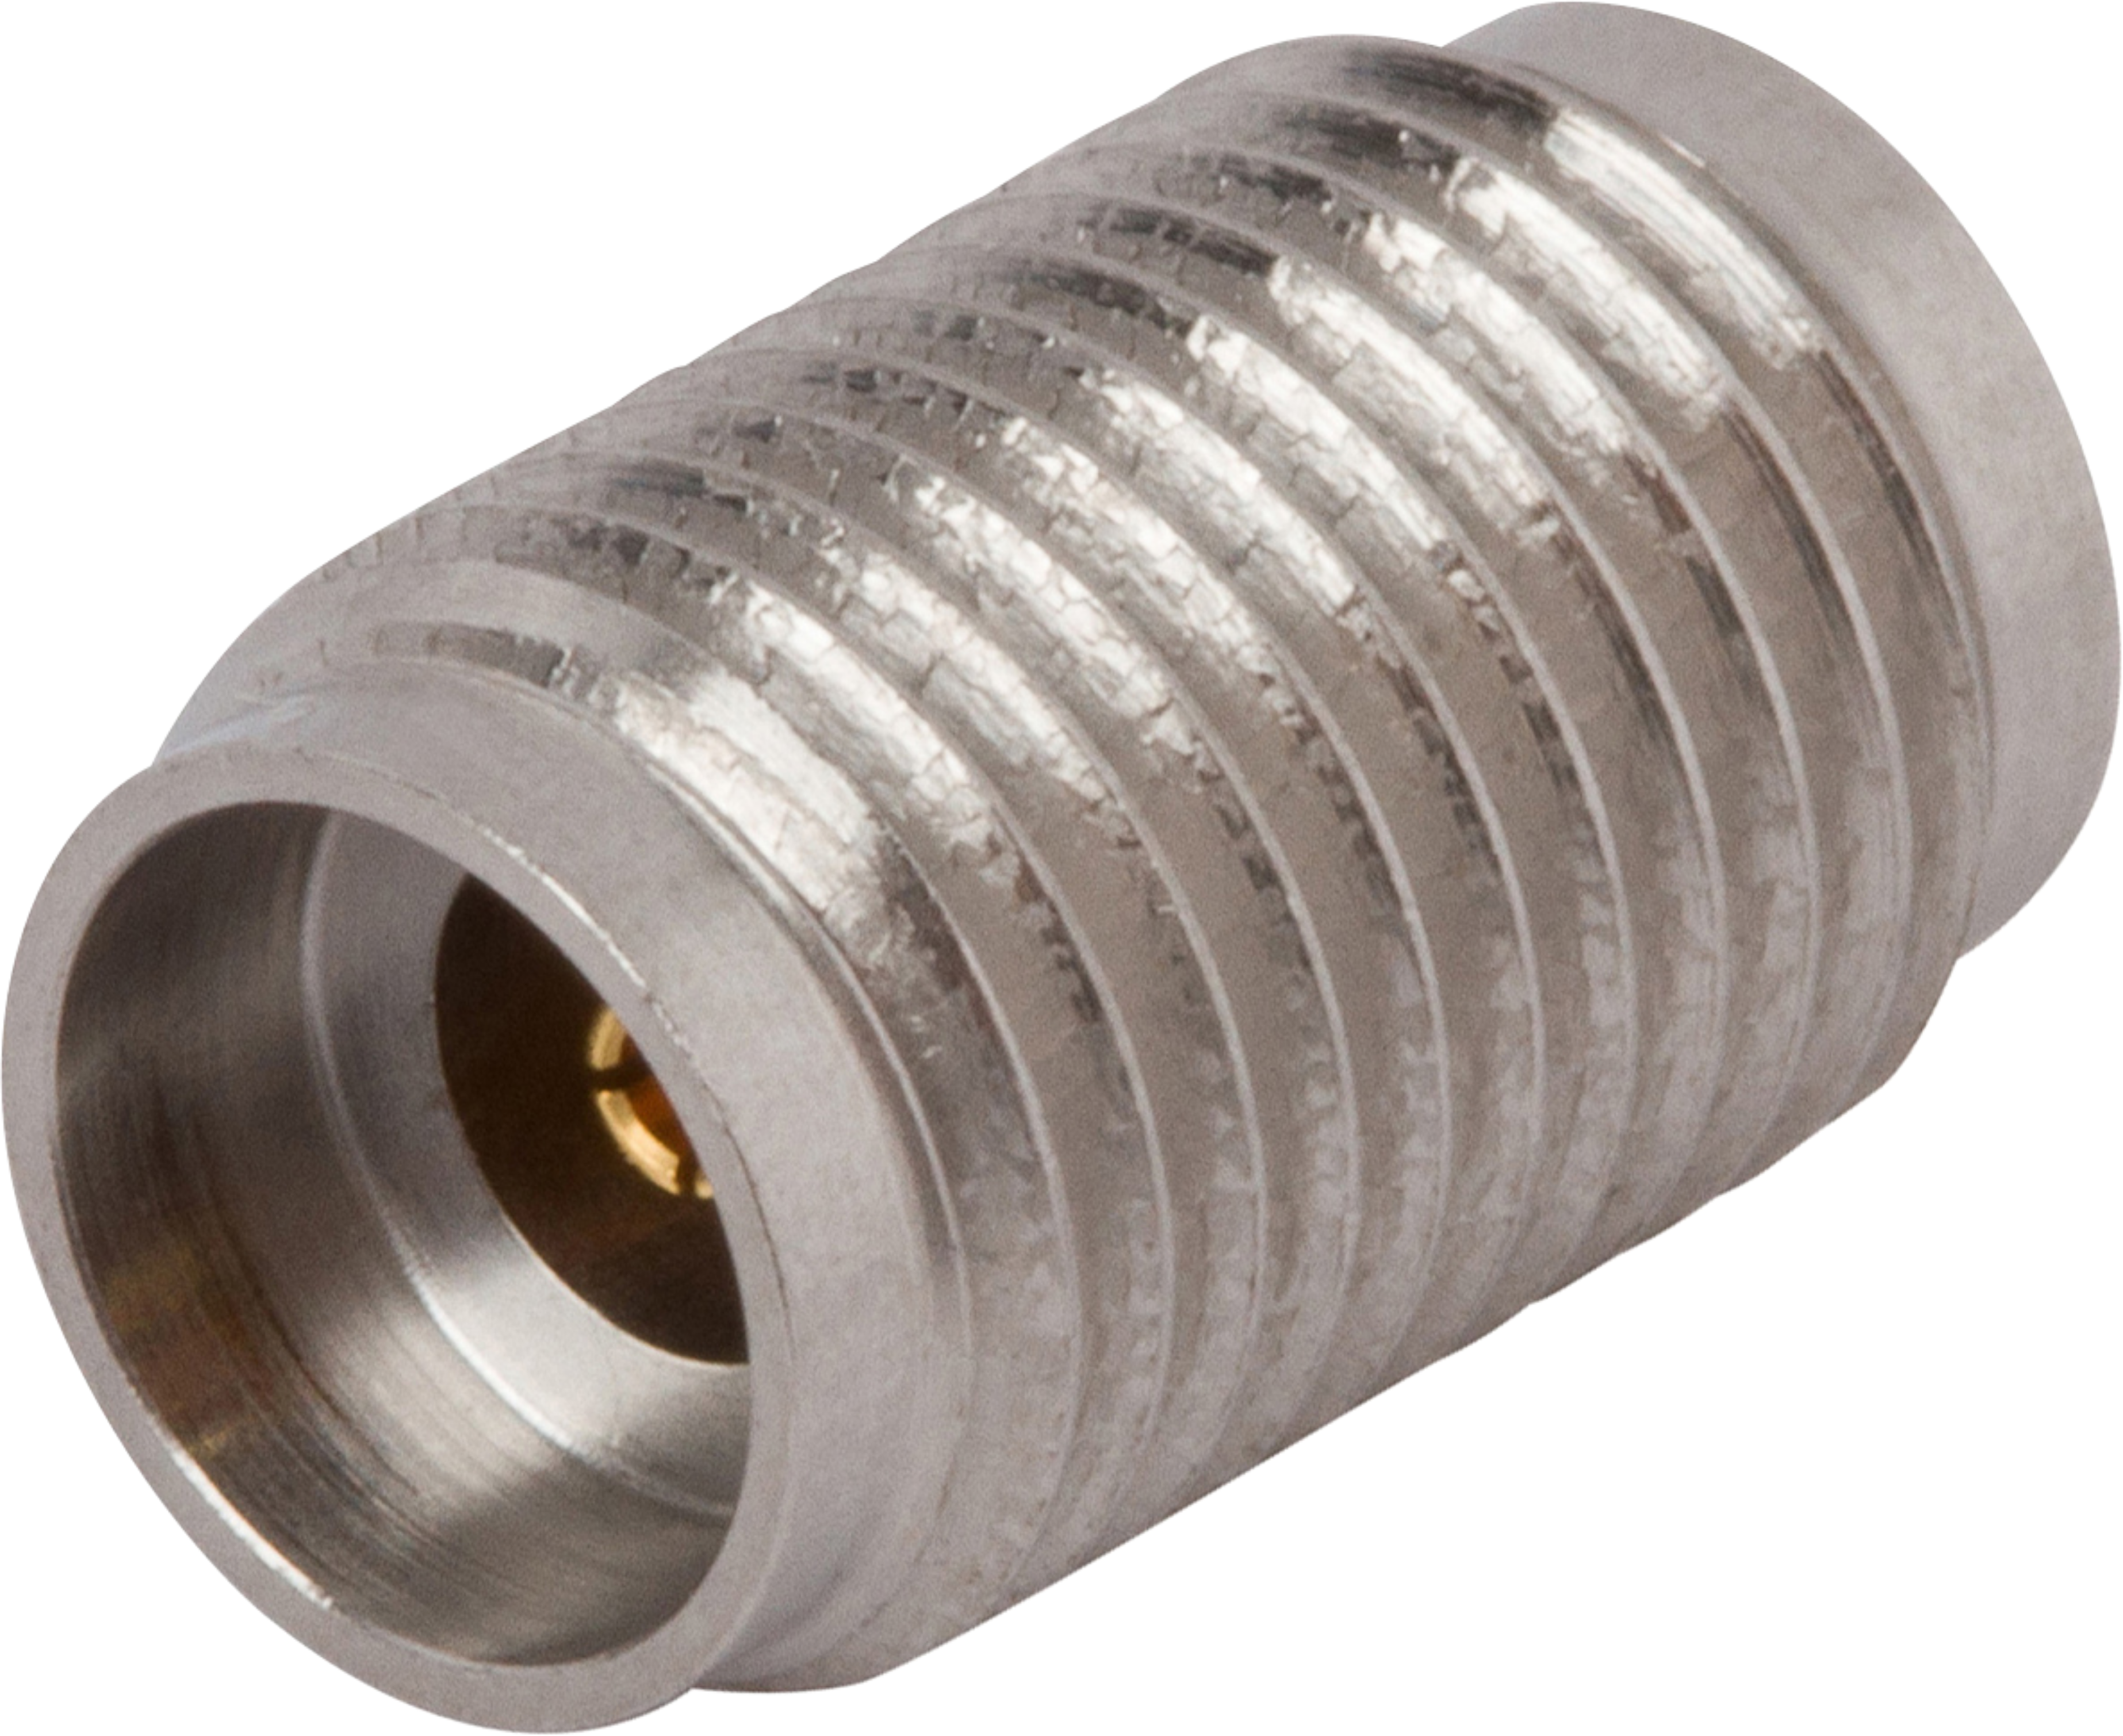 2.92mm Female Sparkplug Connector, SF1575-6007